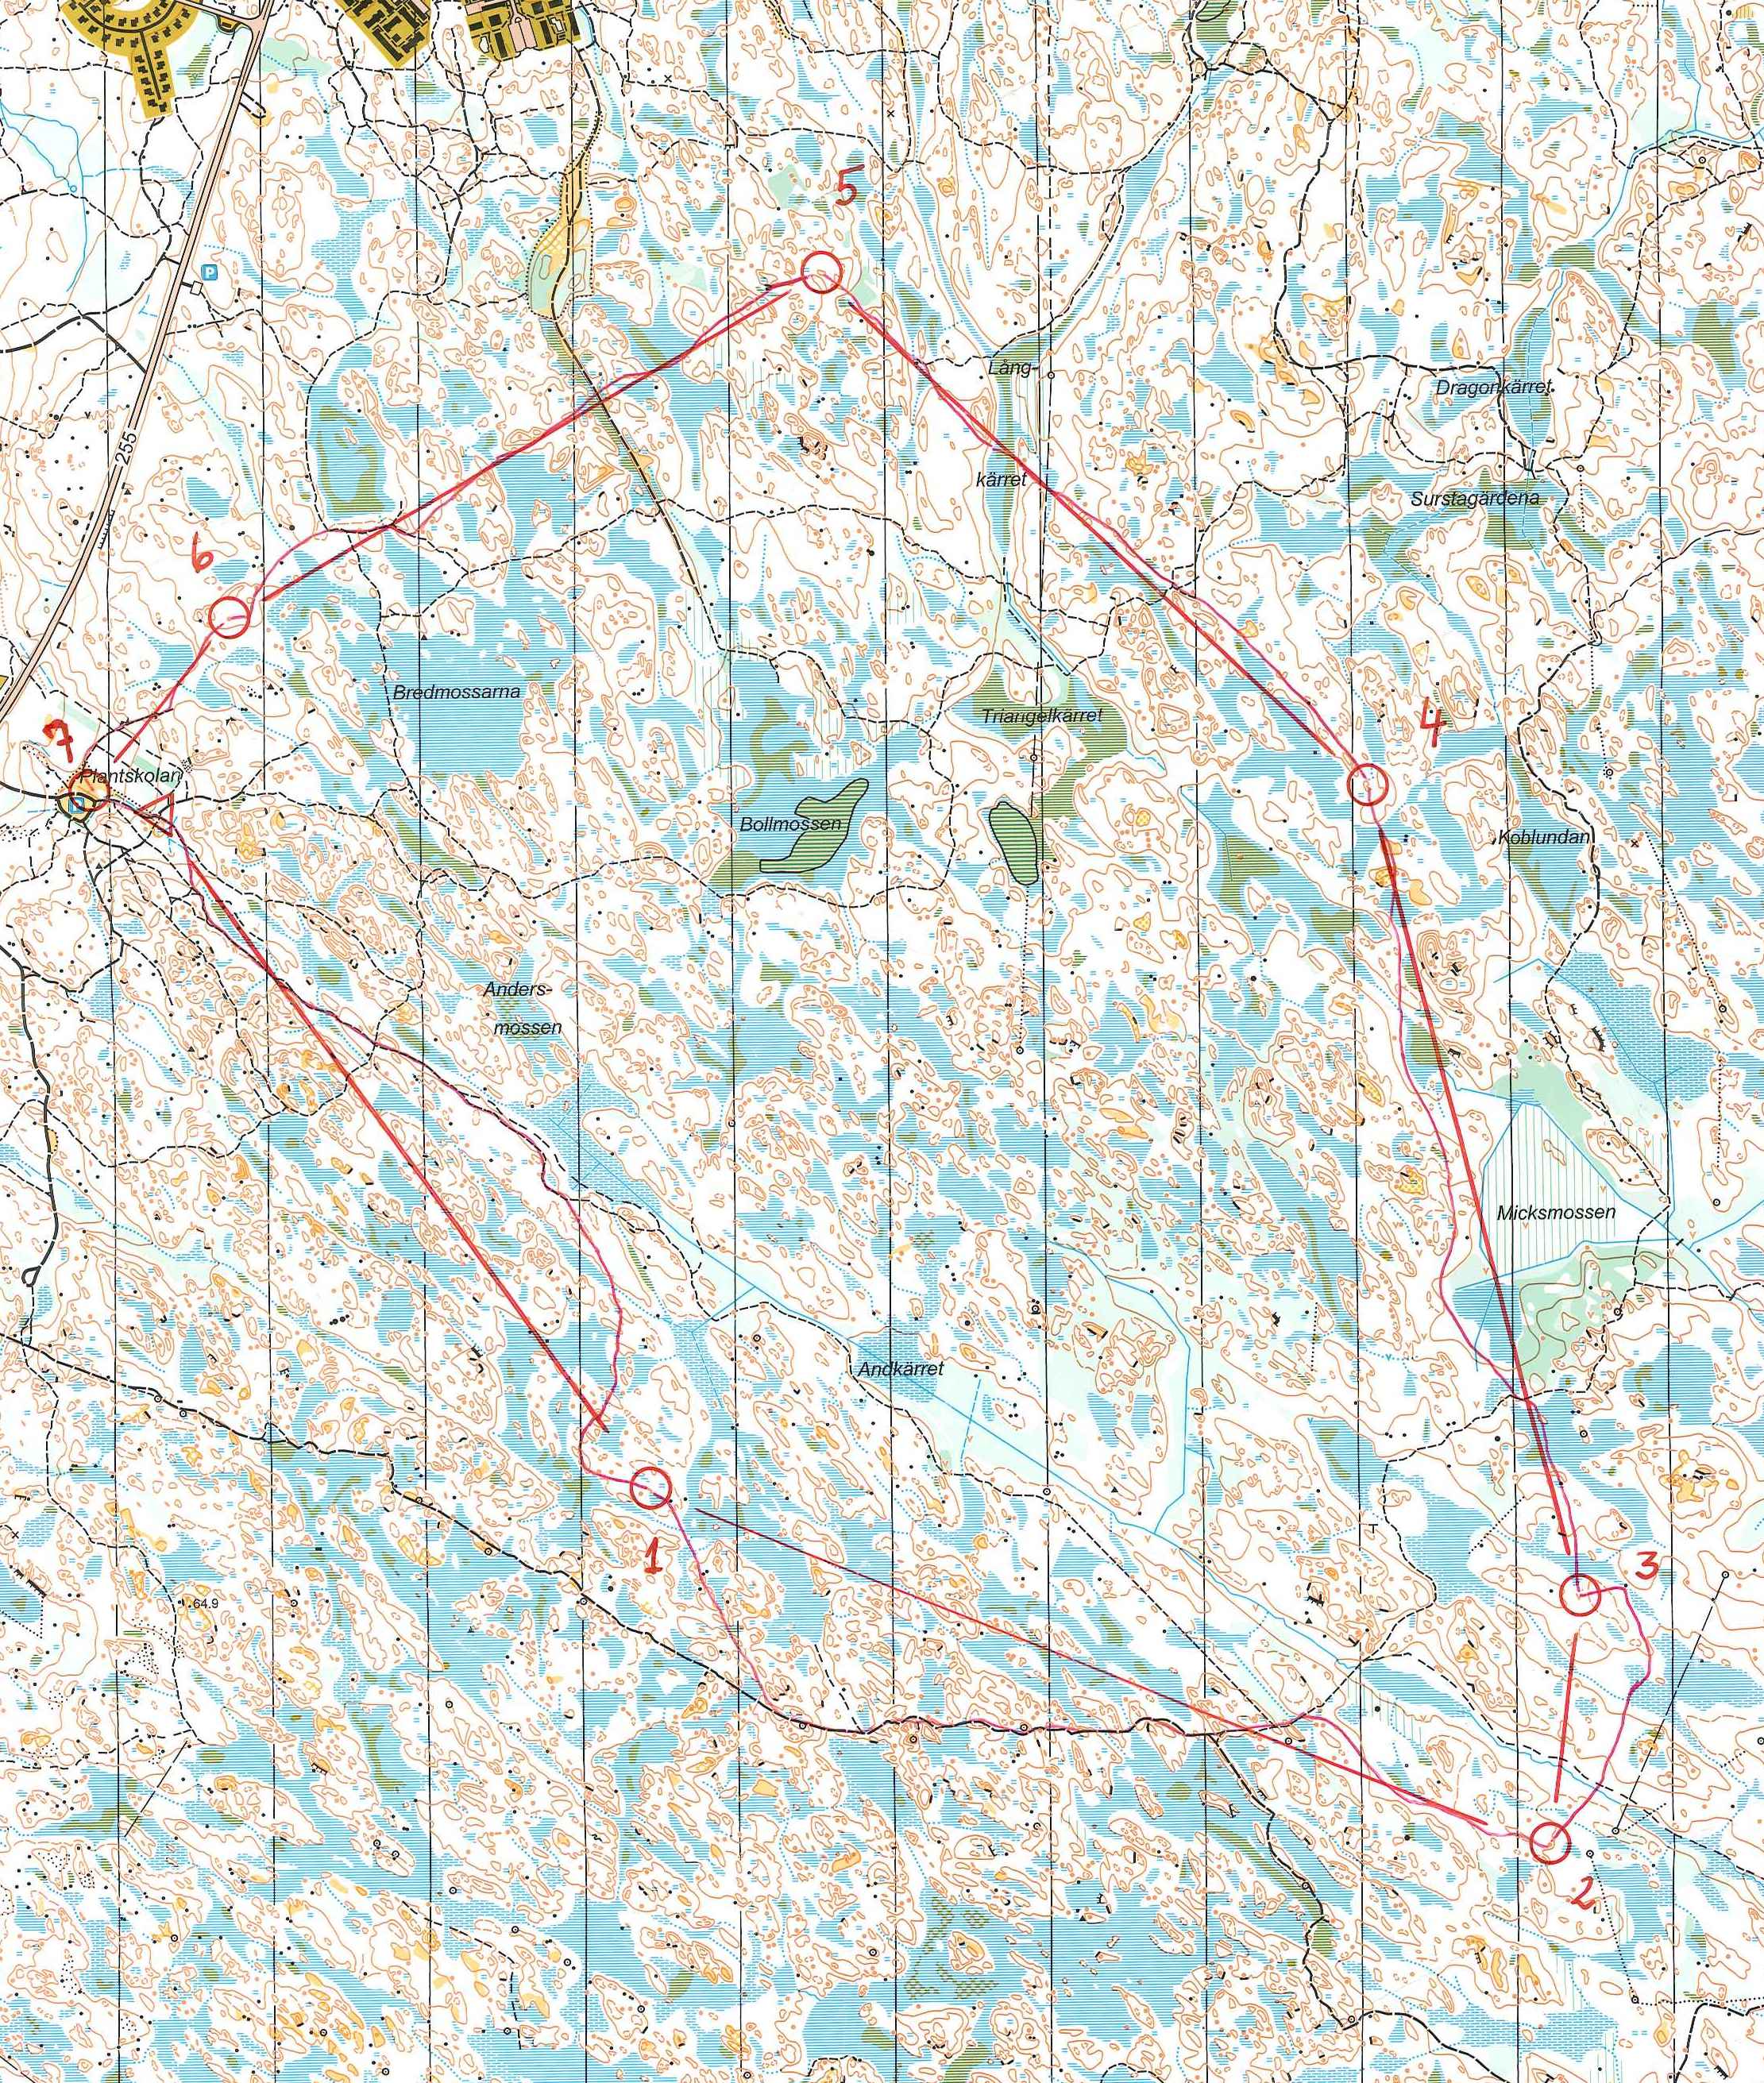 Lång-KM (Ultralång), varv 1 (19-10-2003)